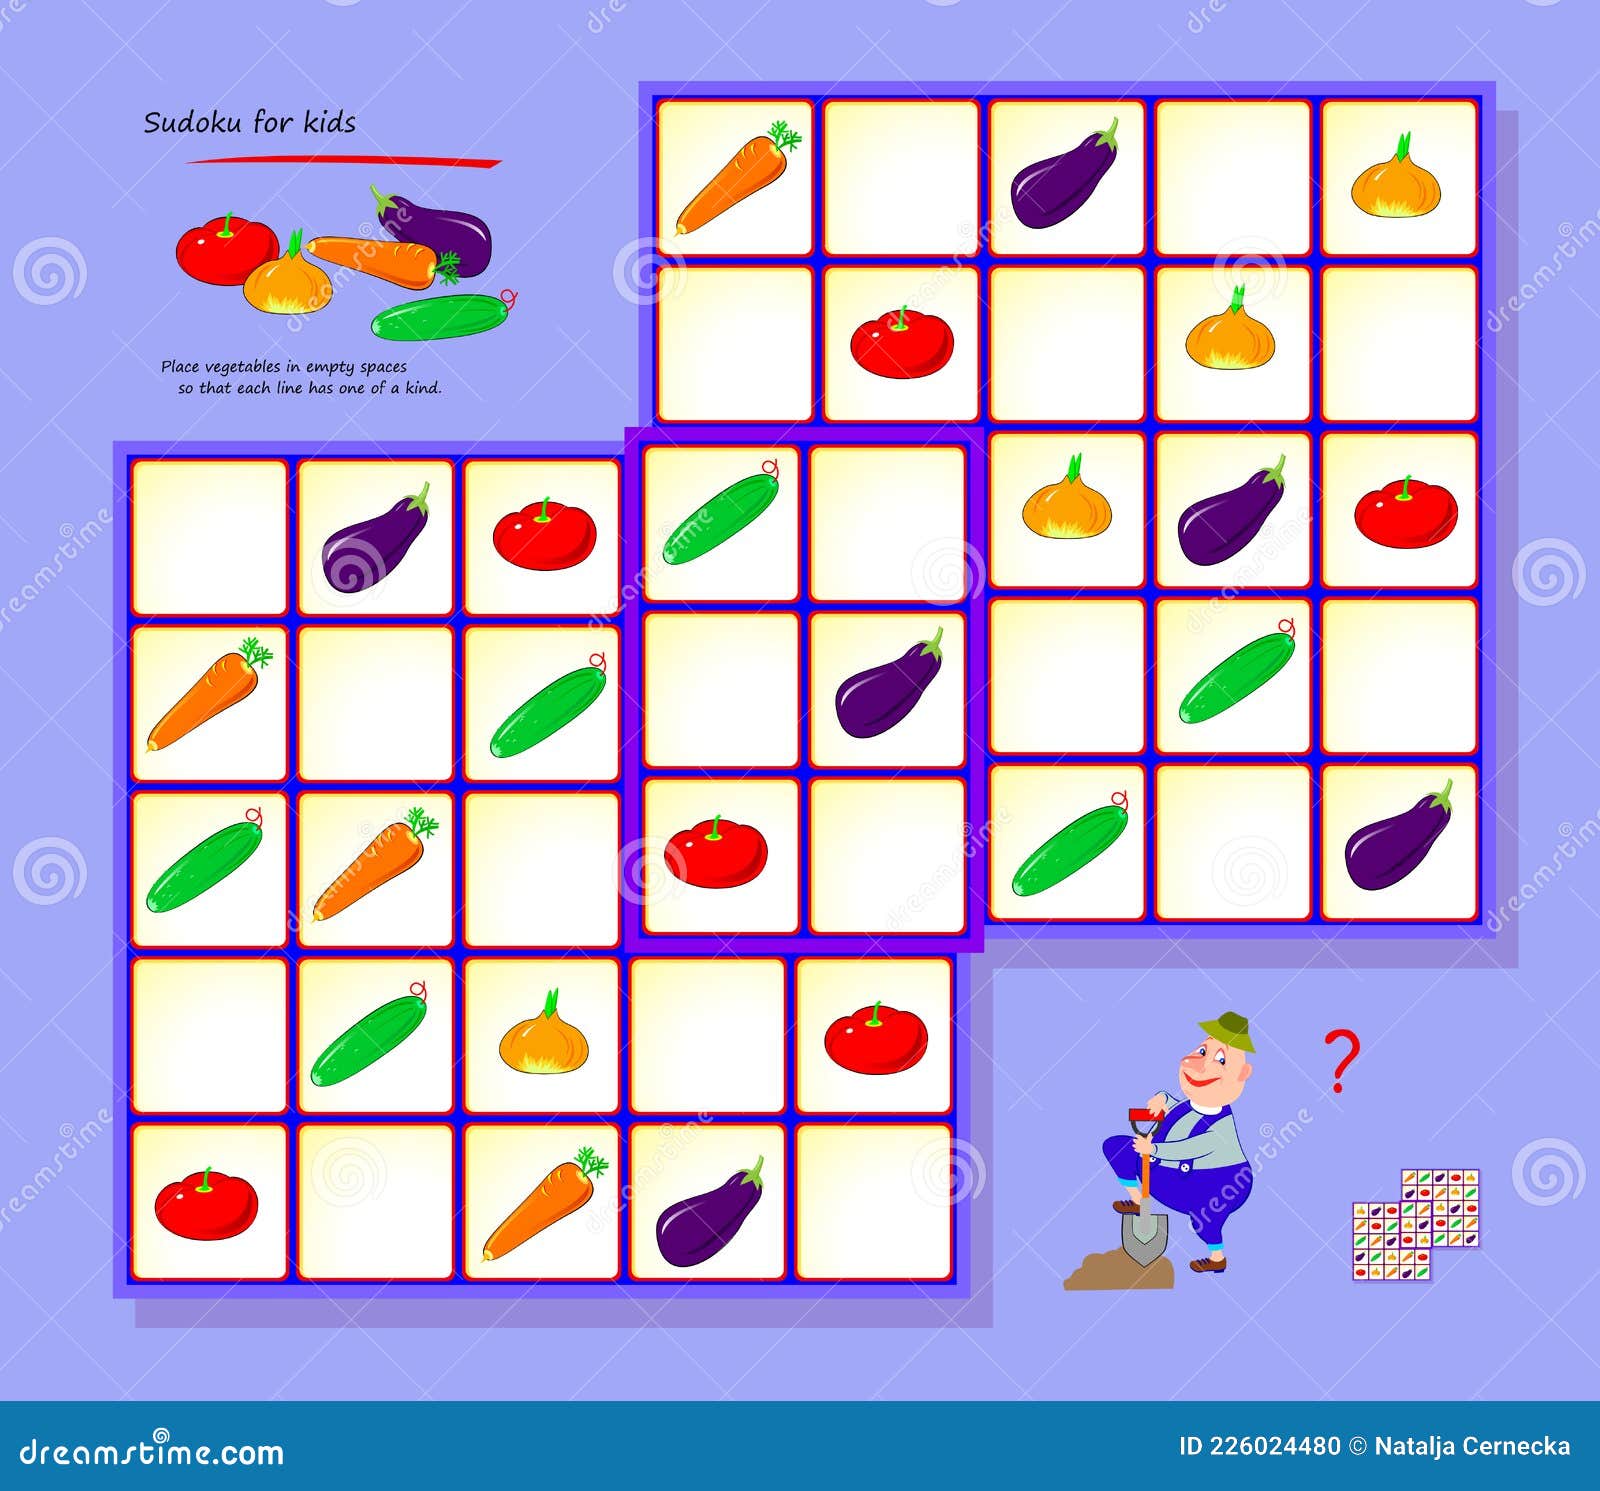 Sudoku Para Niños. Página Para Libro De Bromas De Juego Rompecabezas Lógico Para Niños Y Adultos. Jugar En Línea. Form Ilustración del Vector - Ilustración de 226024480